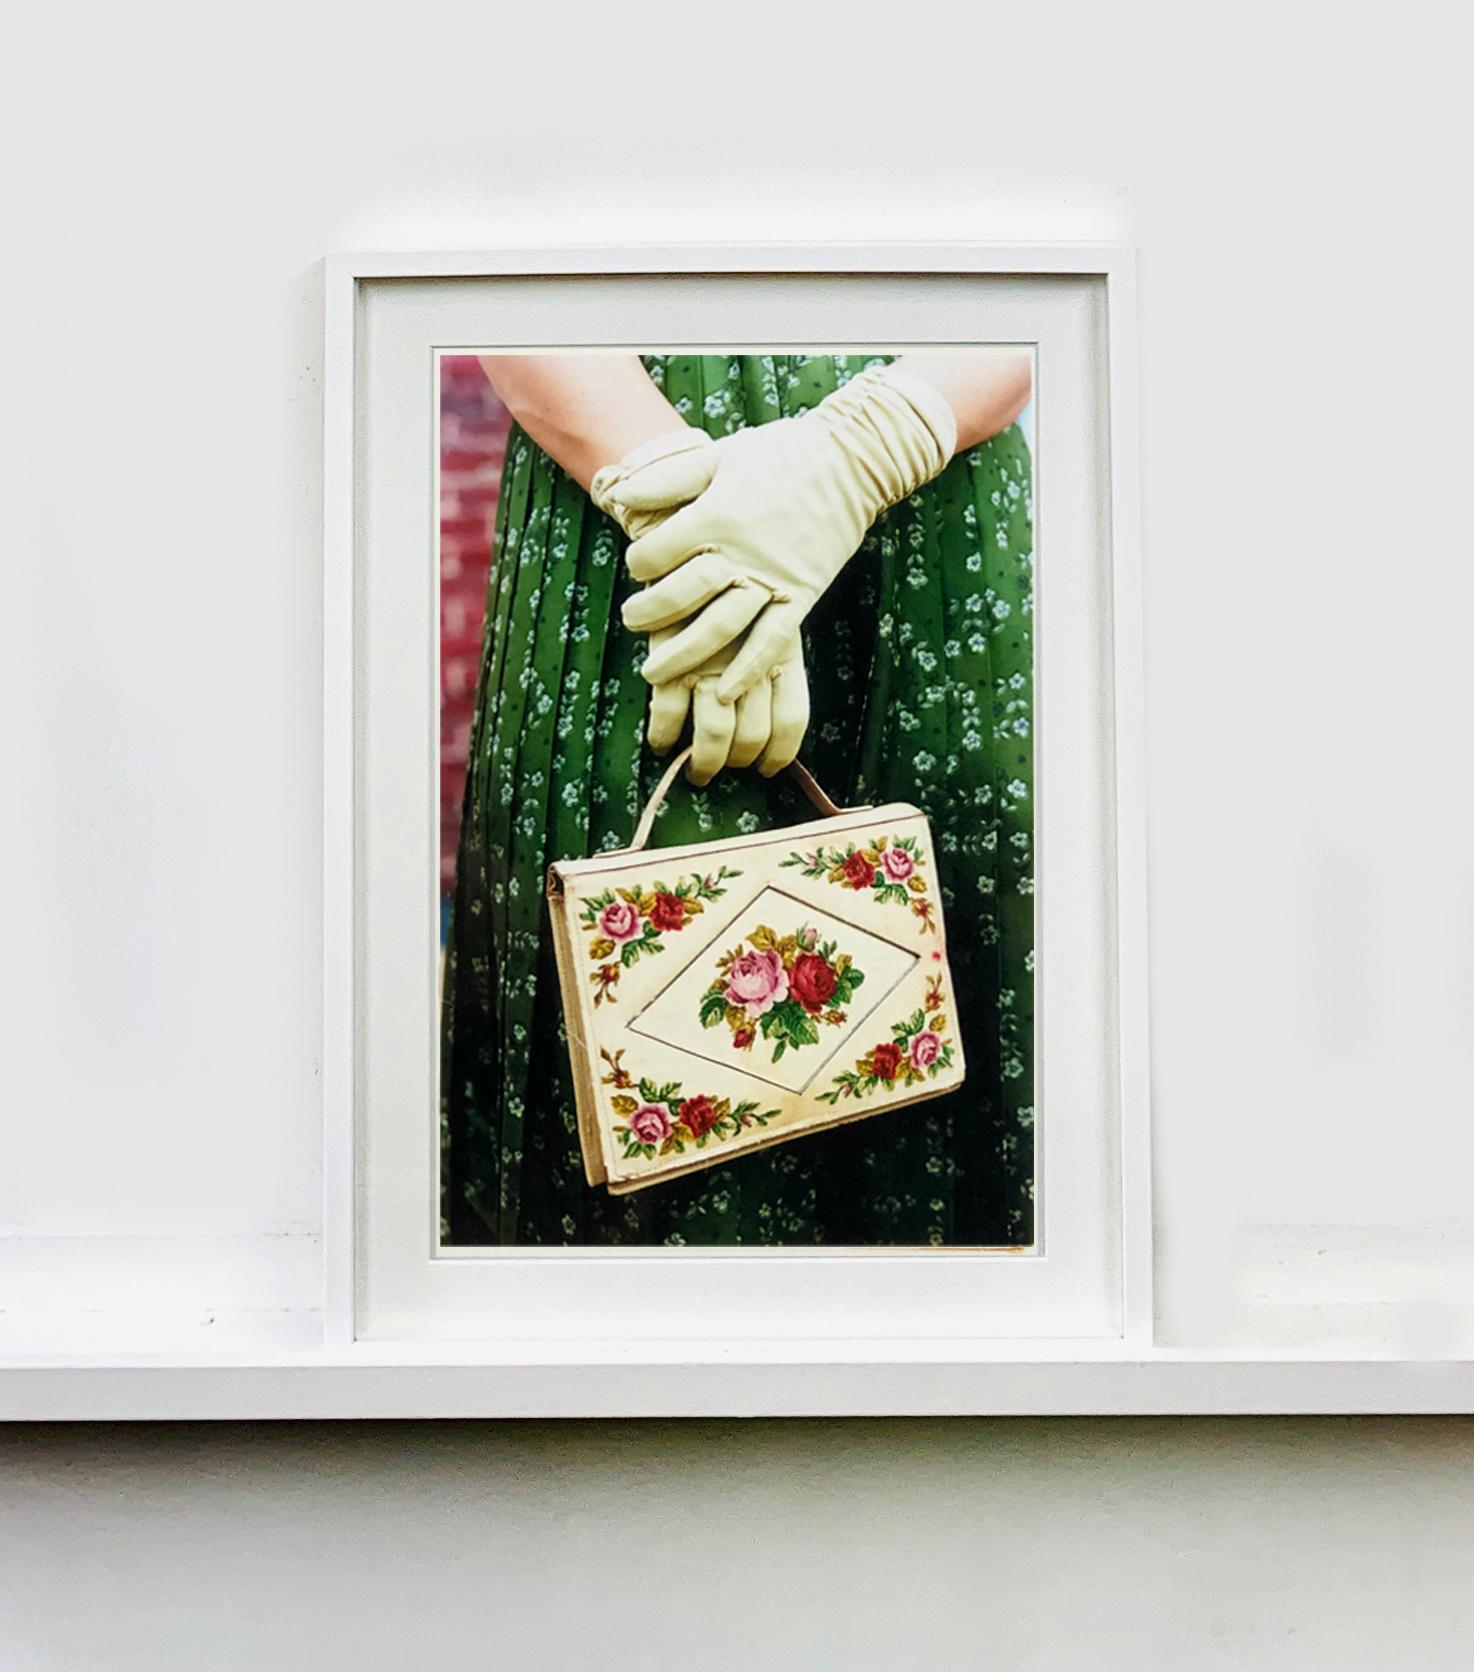 Handschuhe und Handtasche, Goodwood, Chichester - Feminine Mode, Farbfotografie (Zeitgenössisch), Photograph, von Richard Heeps